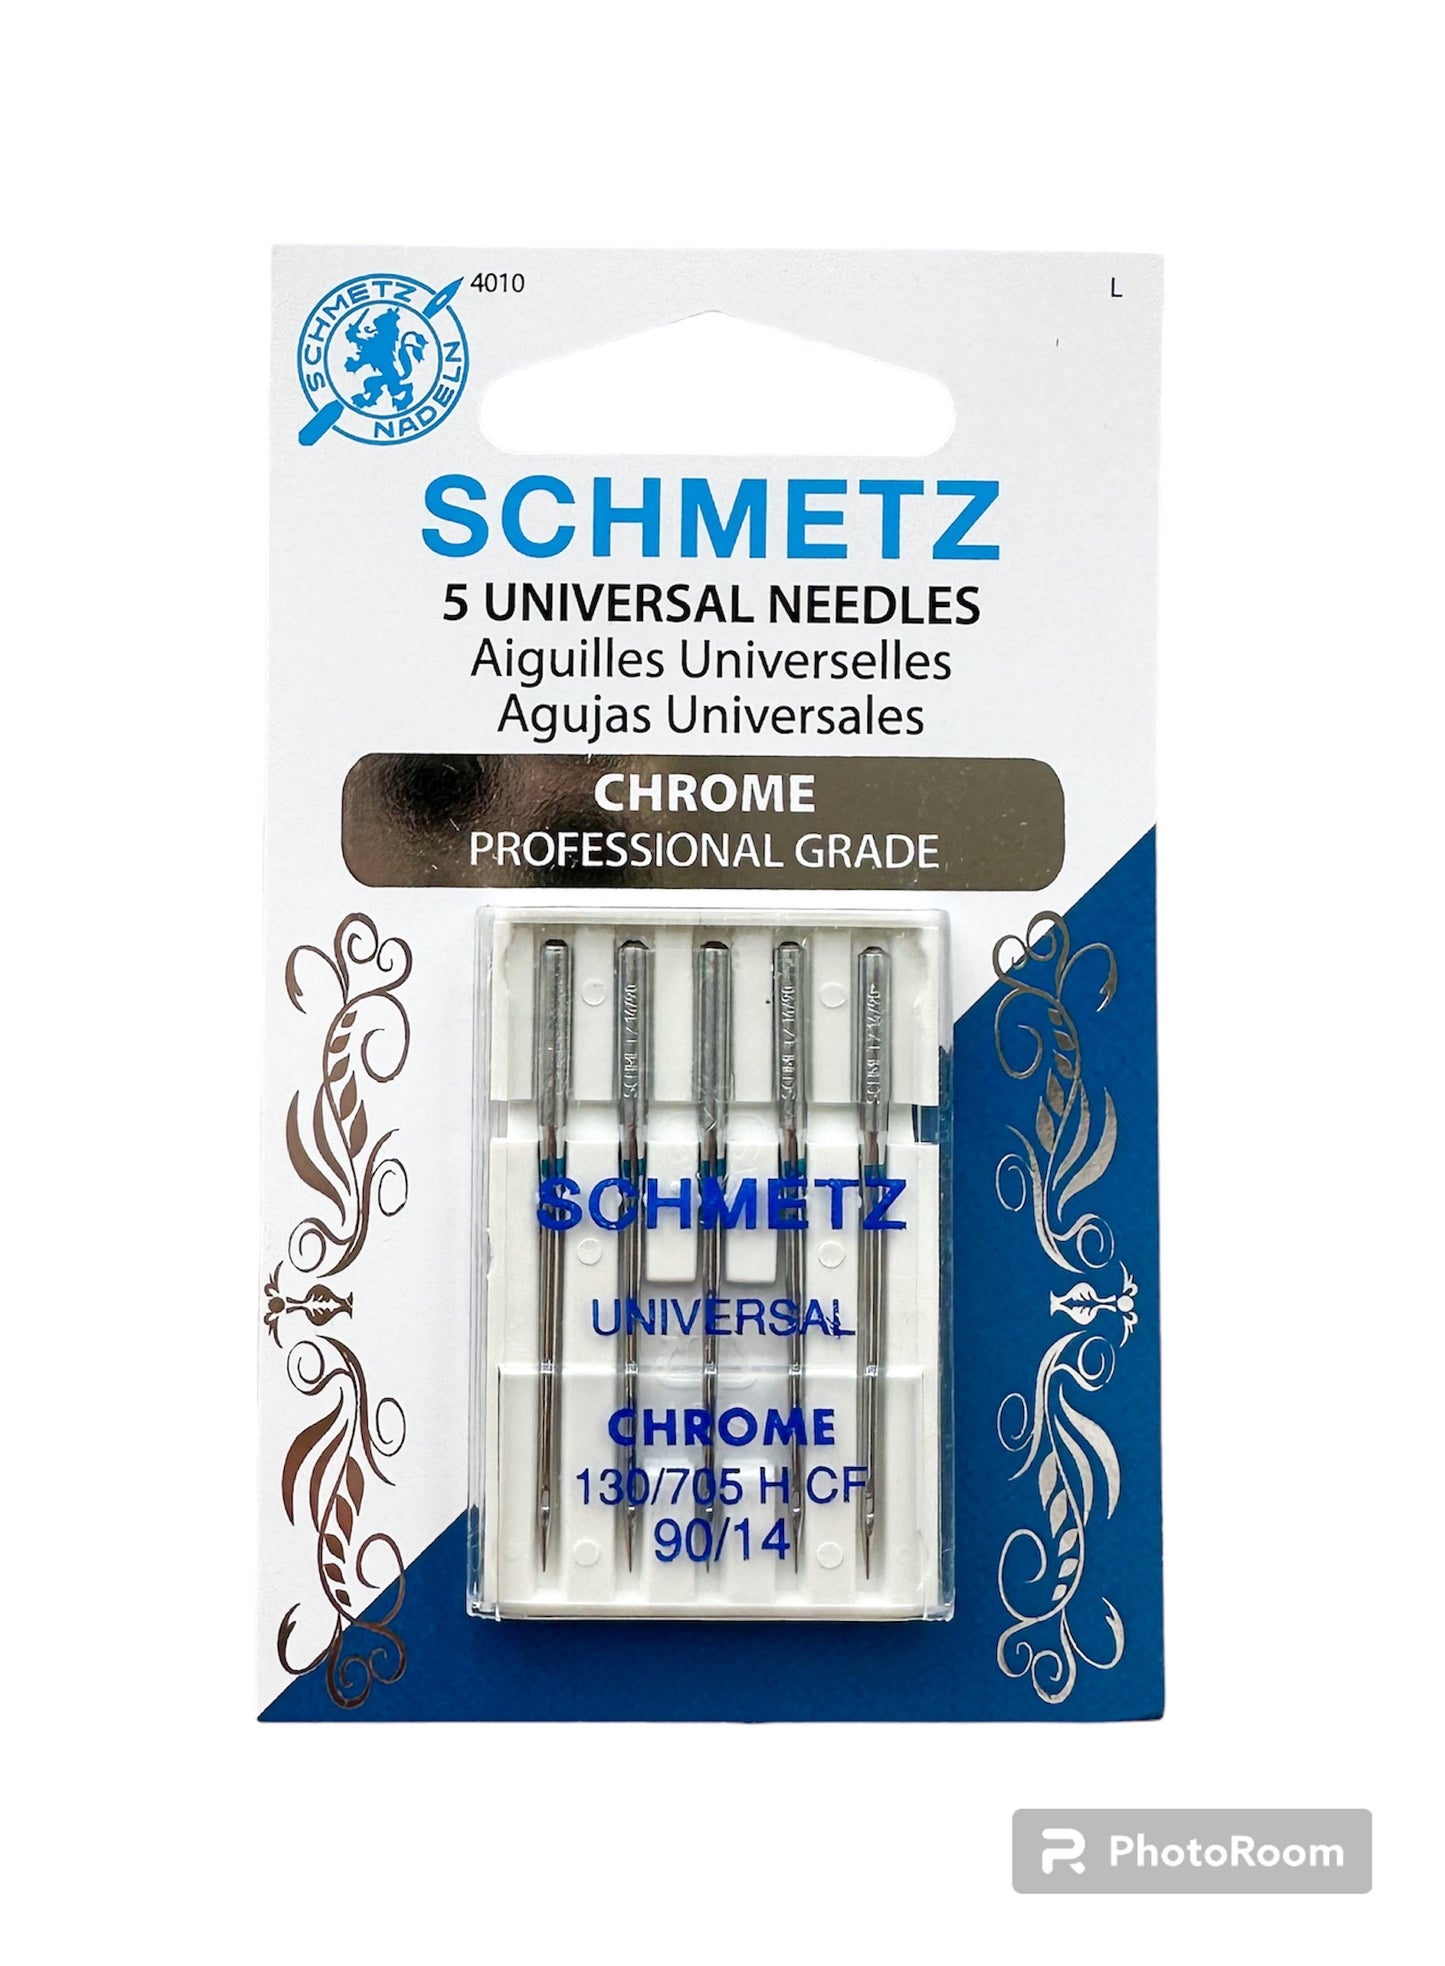 Schmetz chrome universal needles size 90/14